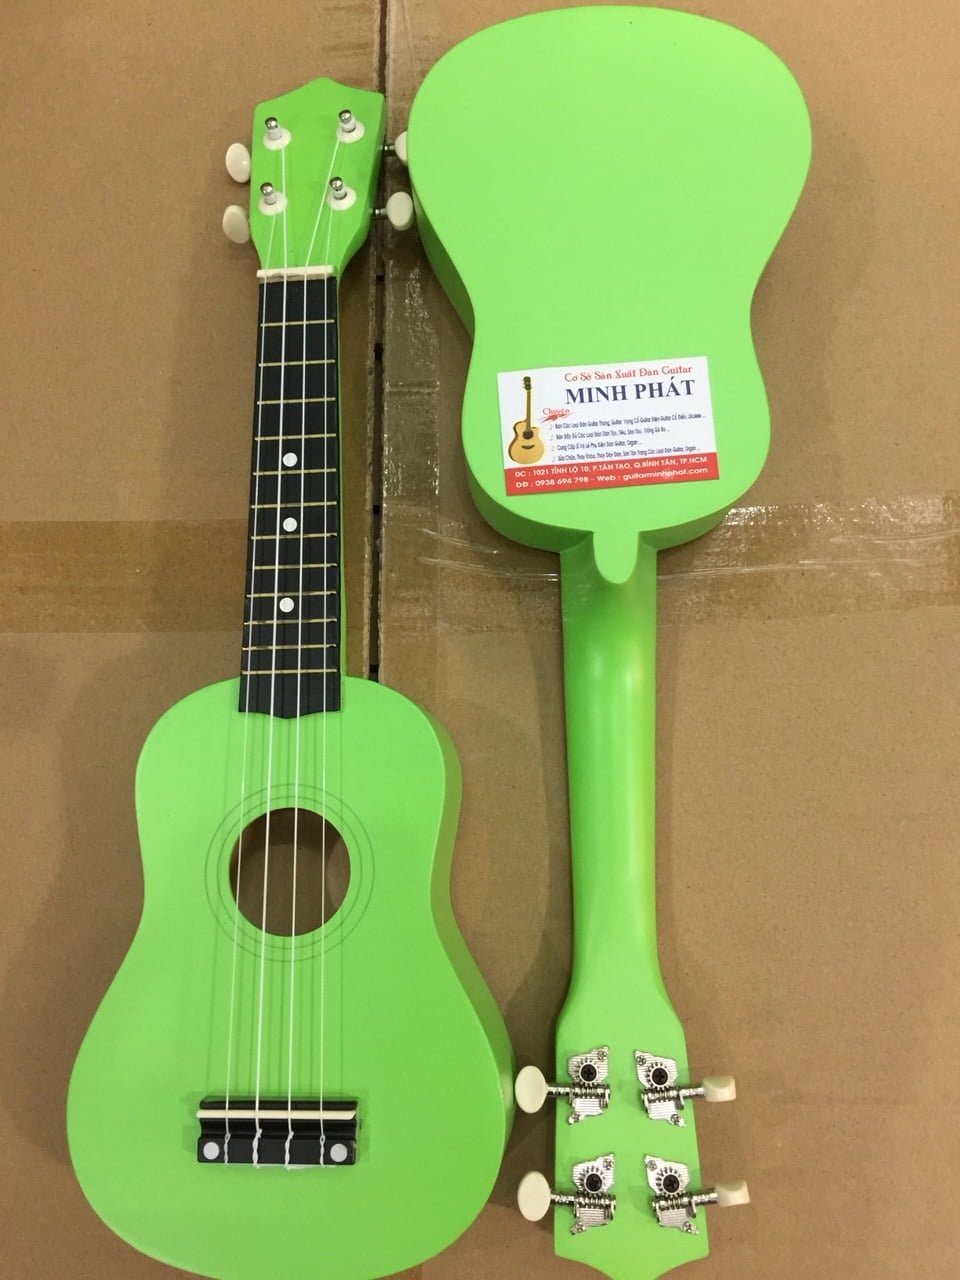 Bán đàn ukulele giá rẻ - đàn ukulele soprano tại nhạc cụ minh phát